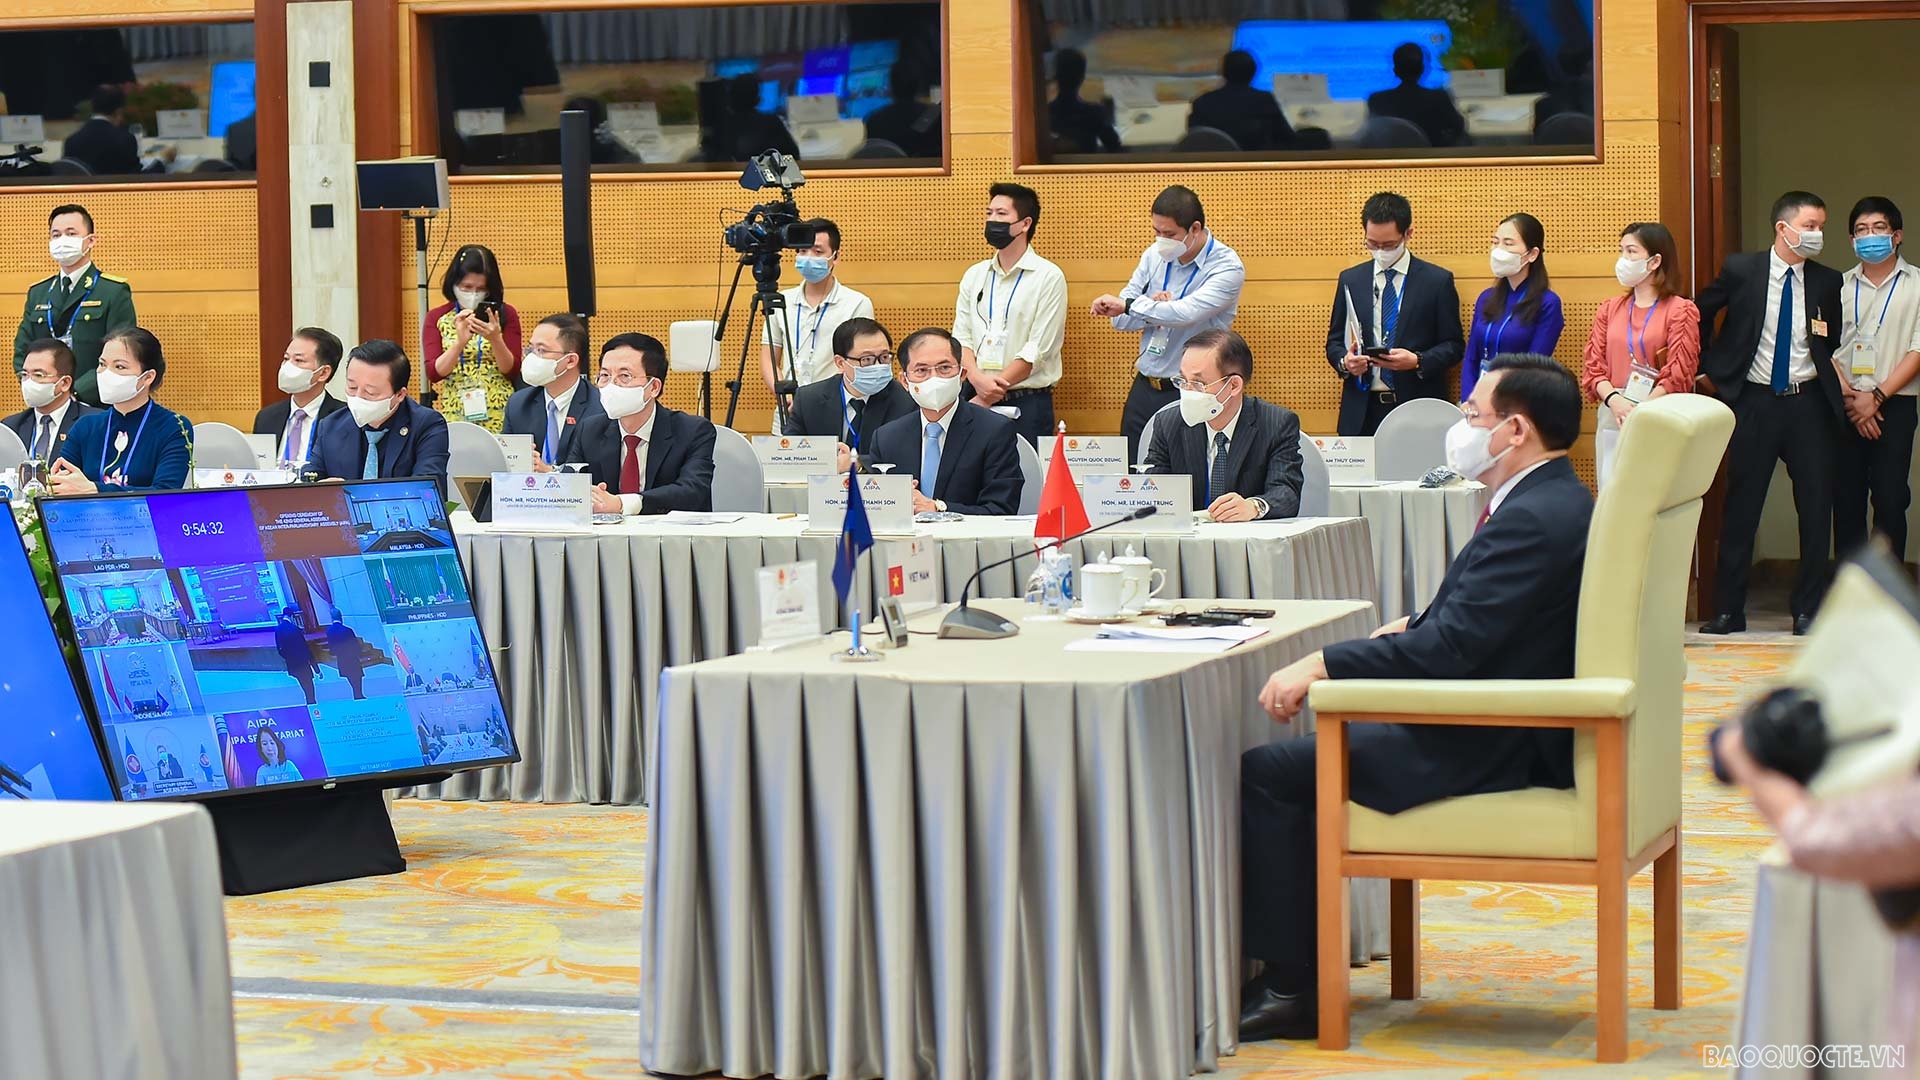 Toàn cảnh phiên Khai mạc Đại hội đồng AIPA 42 qua ảnh